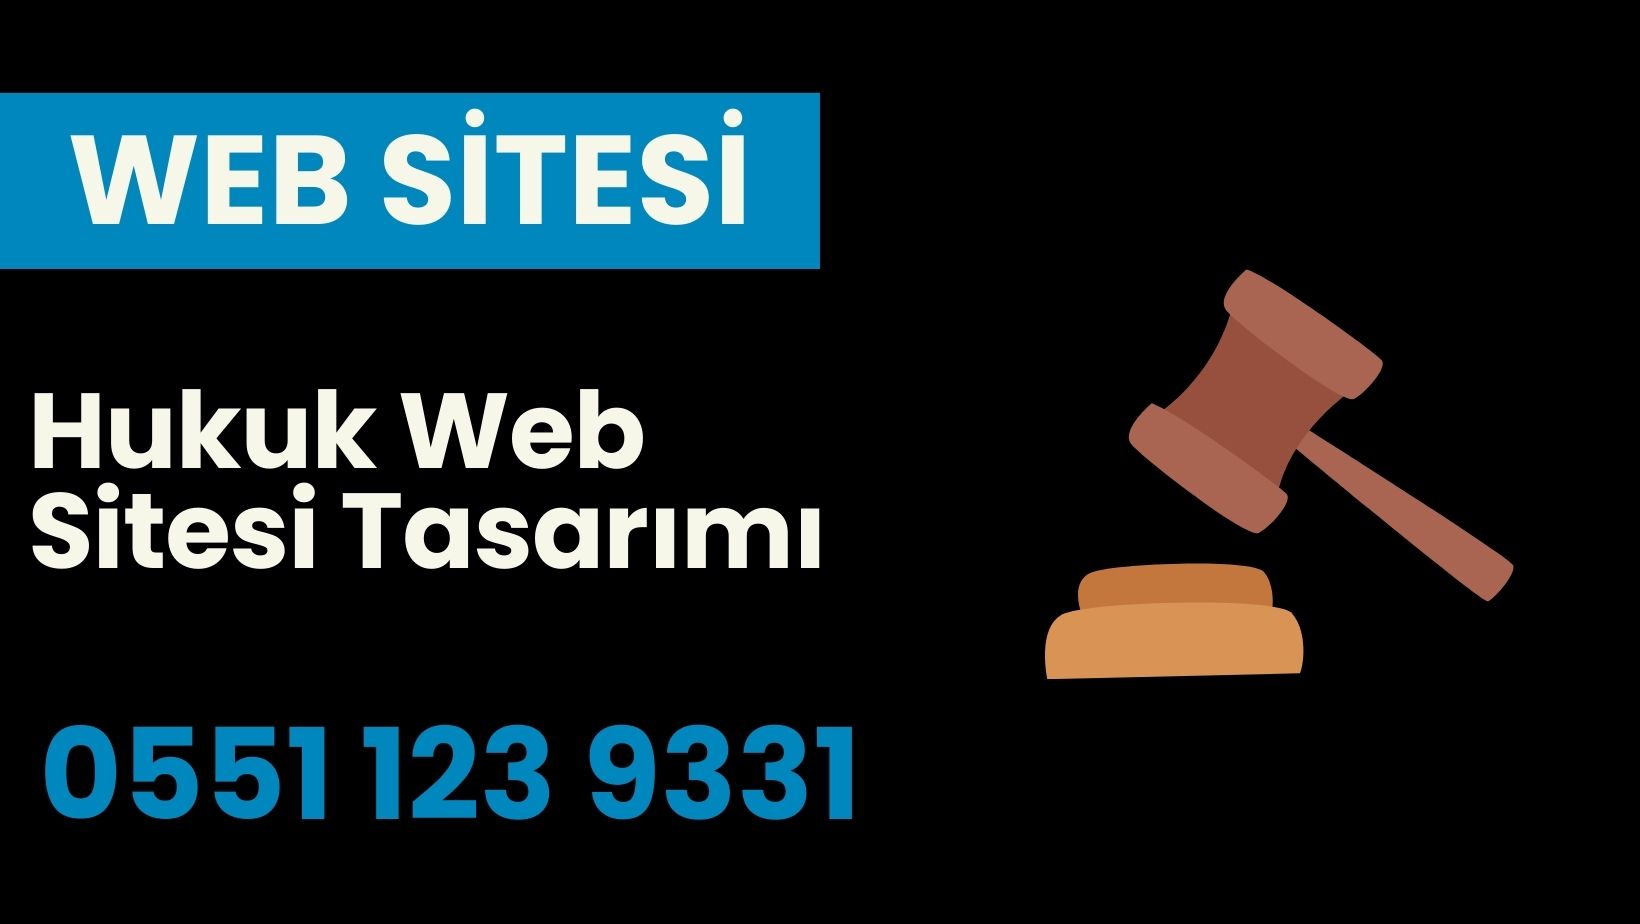 Hukuk Web Sitesi Tasarımı